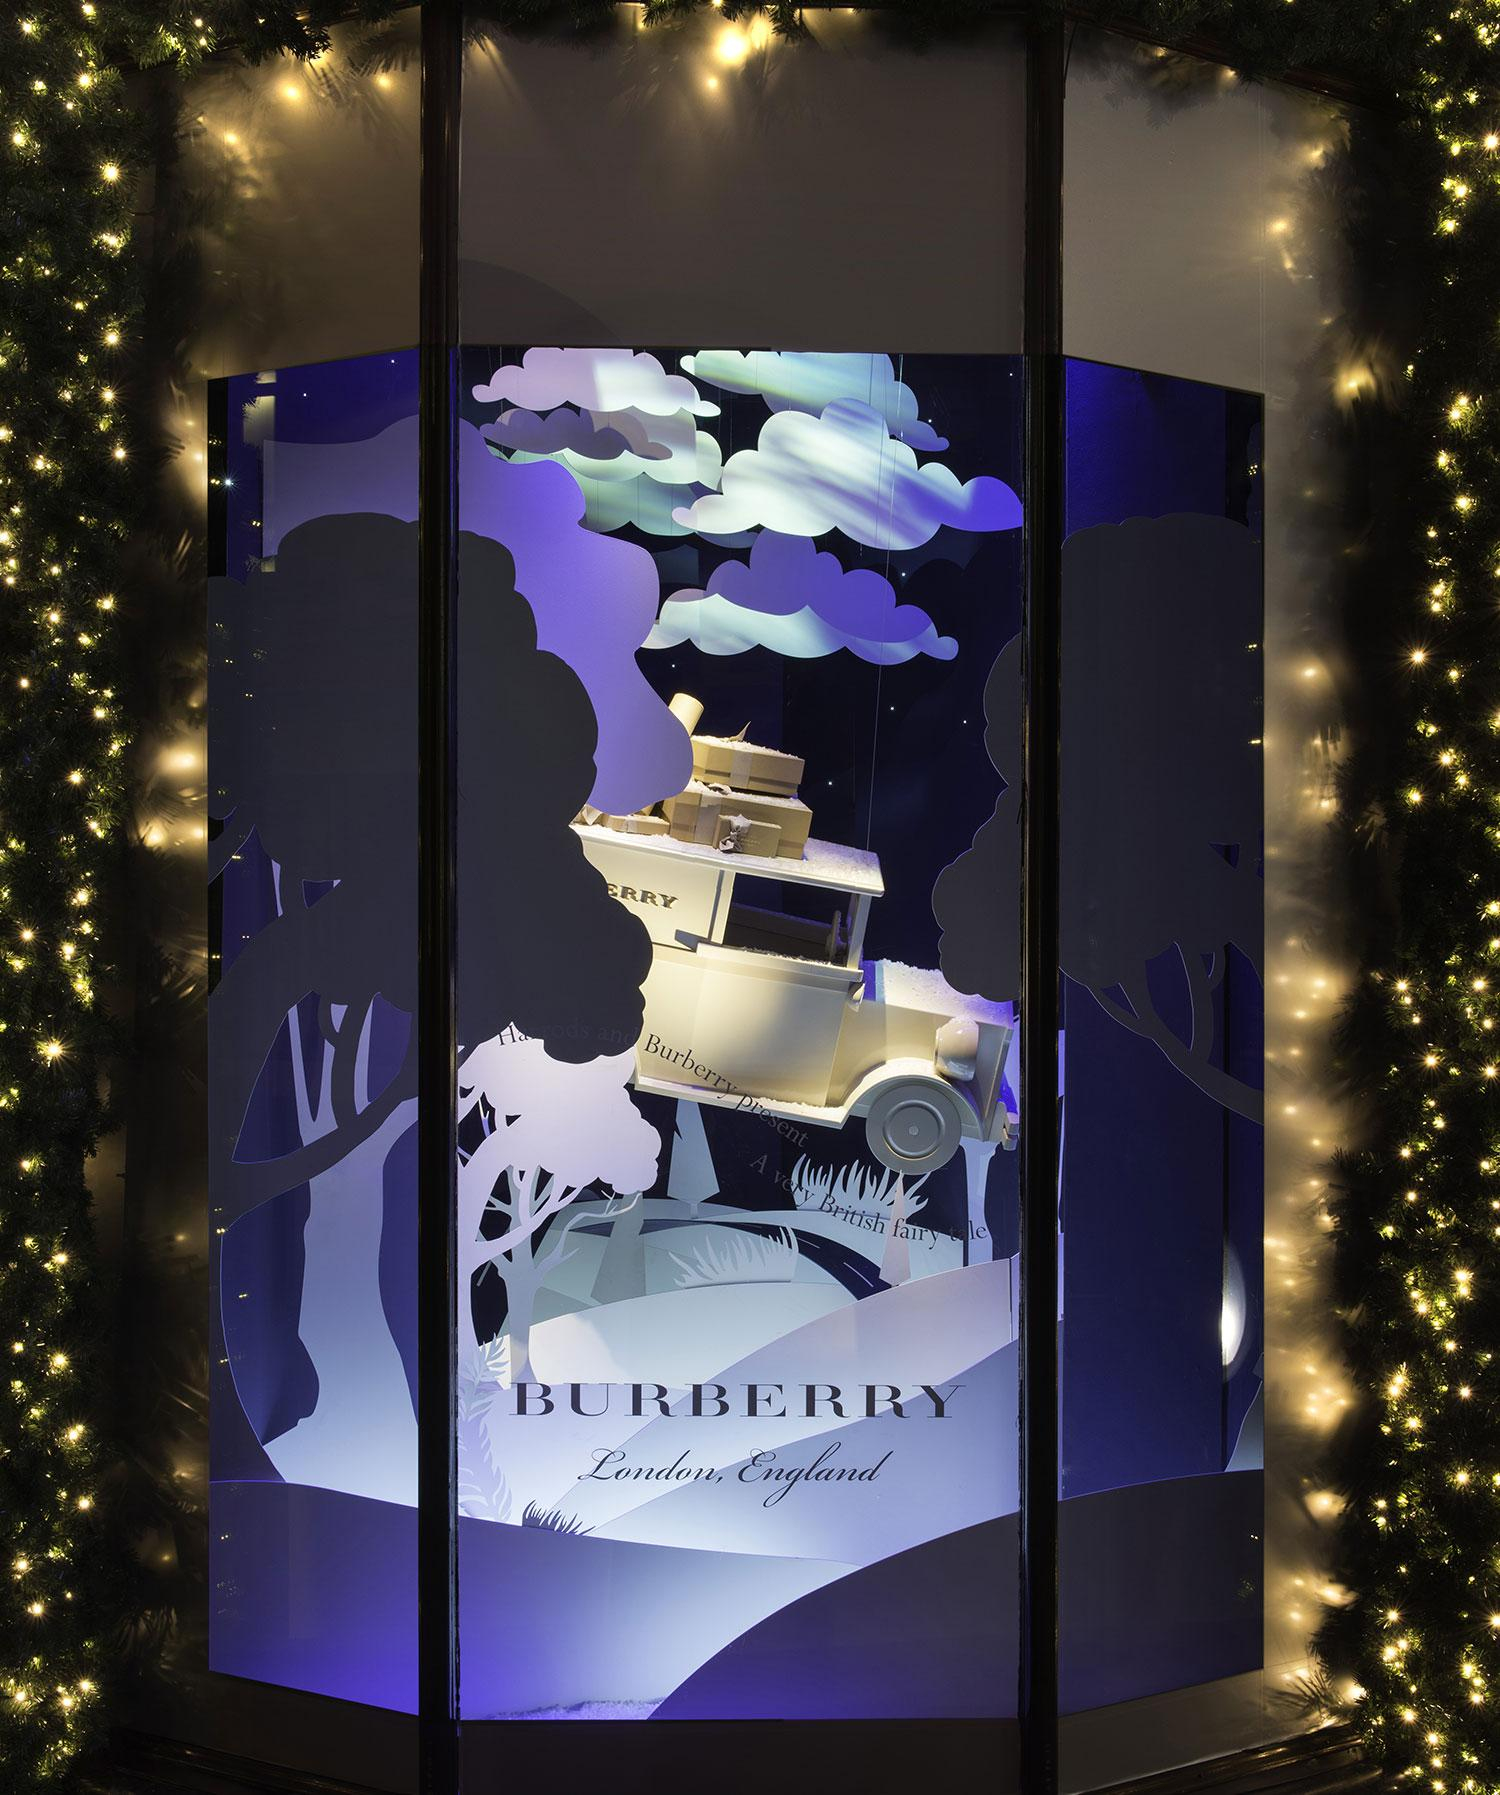 Les Plus Belles Vitrines De Noël 2016 - Madame Figaro pour Vitrine De Noel Originale 